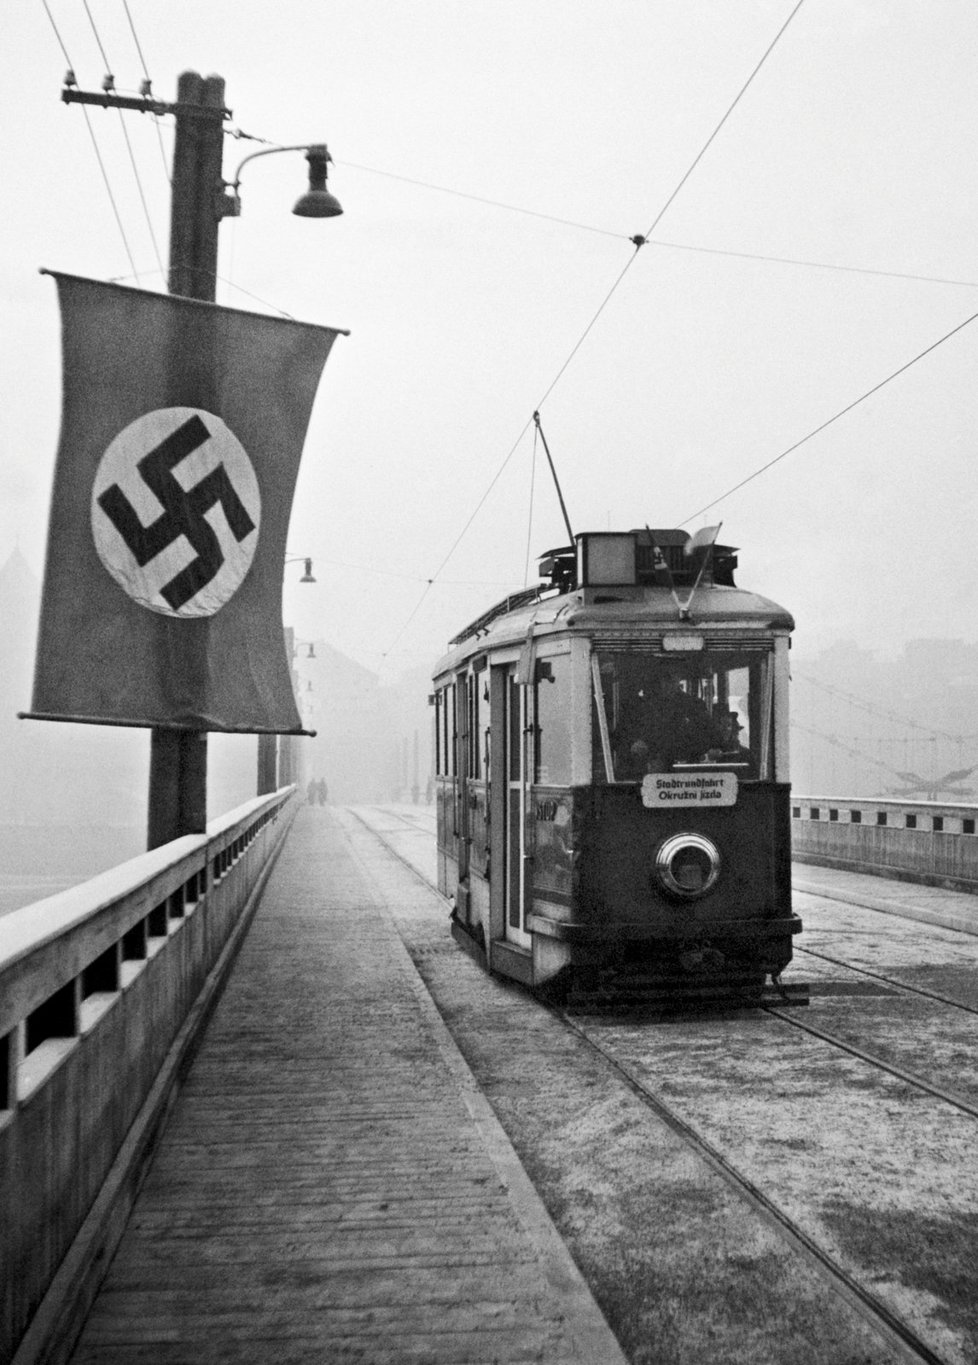 Když nad Prahou vlály nacistické vlajky, Pražanům nebylo veselo. Vztek si pak vylévali na Němcích během Pražského povstání i po něm. (ilustrační foto)